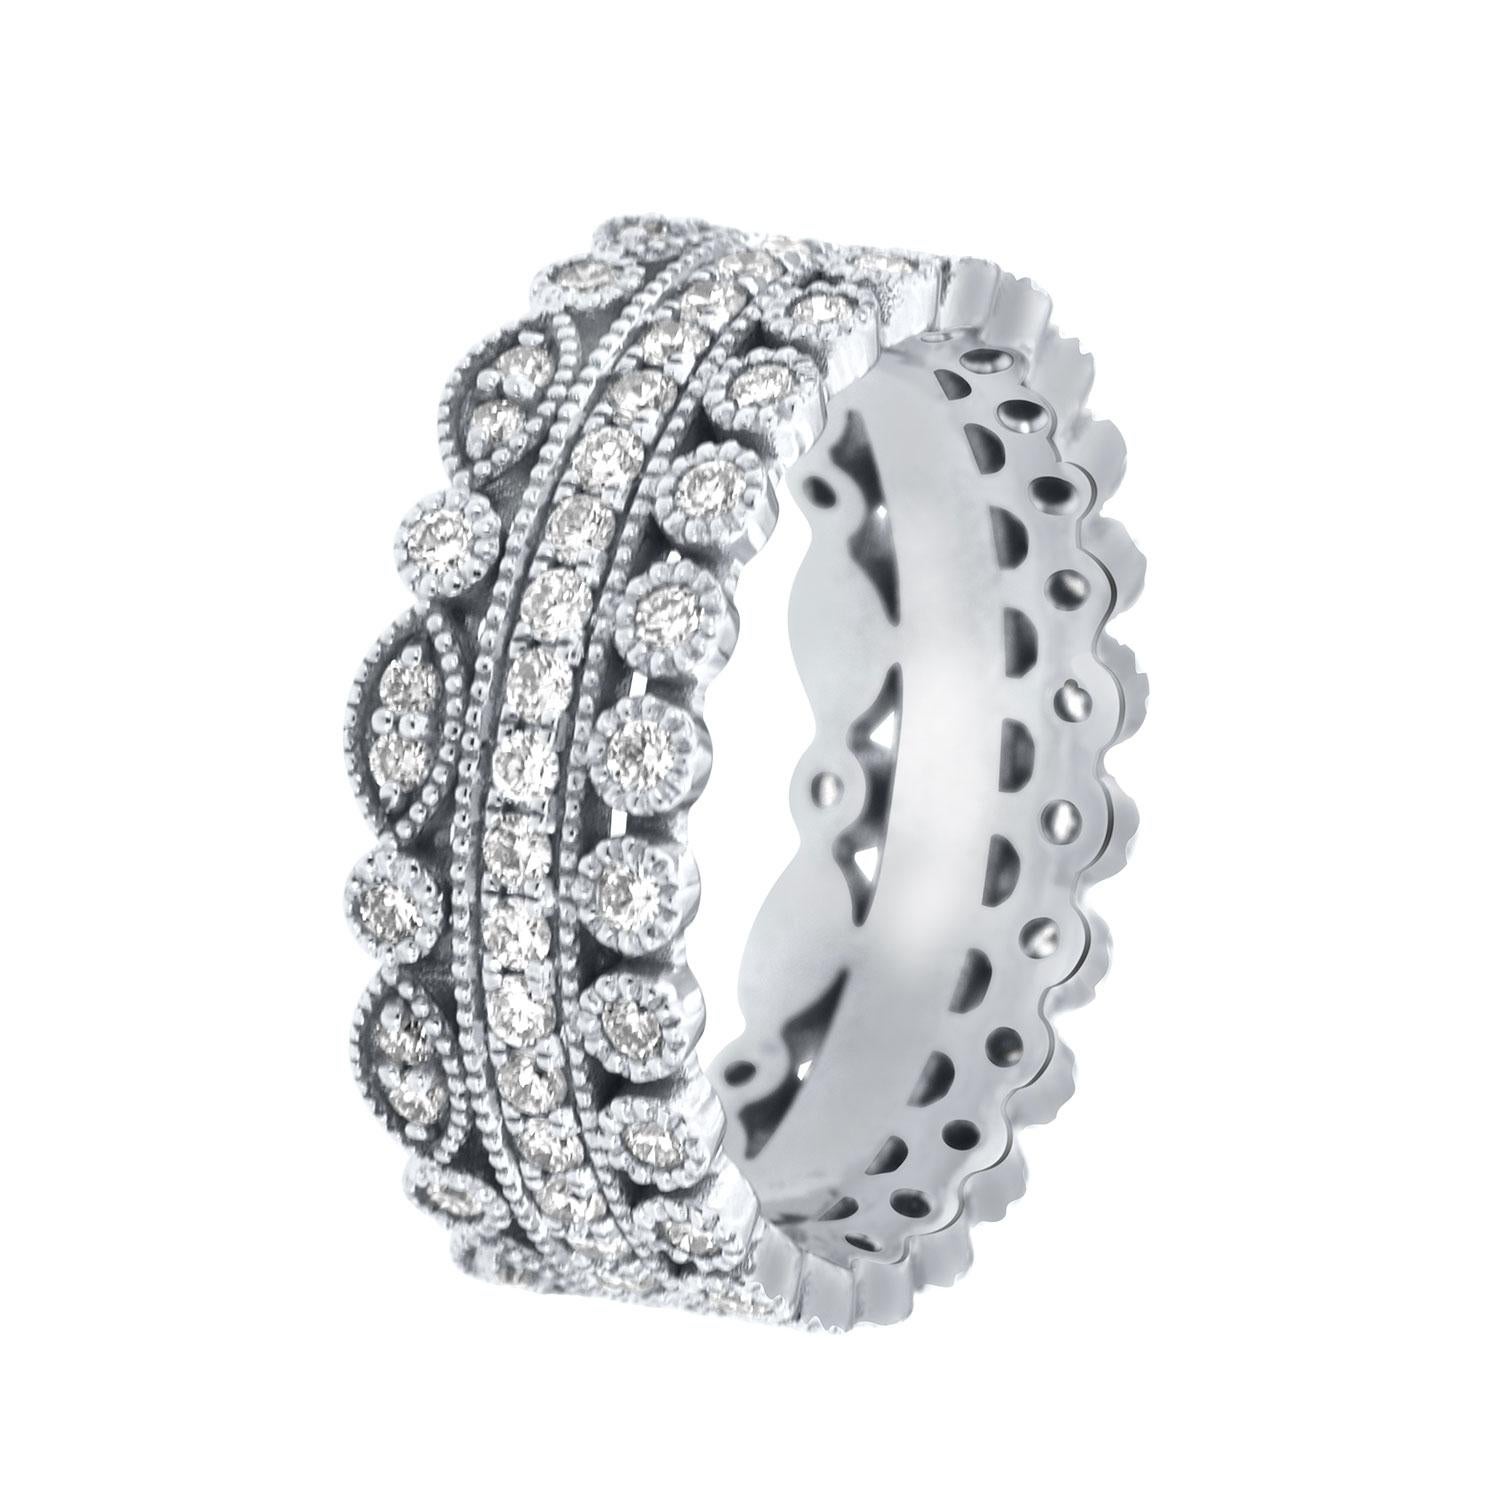 Dieser Stapelring im antiken Stil besteht aus einem Satz von drei Ringen. Dieser Vintage-Ring kann einzeln oder als Stapel getragen werden. Das Gewicht des Diamanten beträgt 1,00 Karat.

Die Ringgröße ist 7,5. Die Größe ist bis zu 1/2 Größe größer 